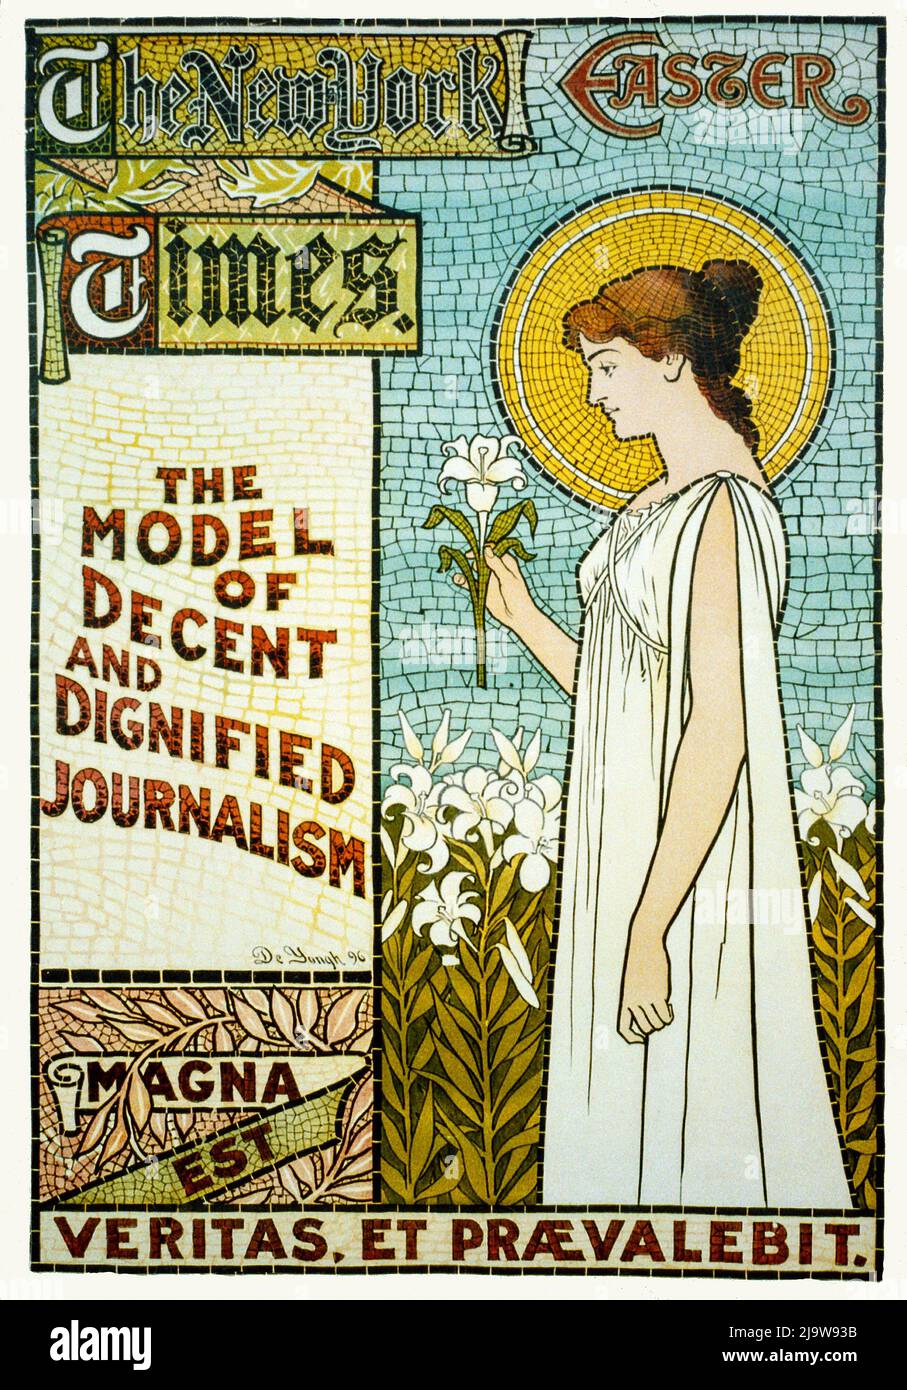 Ein Jugendstil-Plakat für die New York Times, Ostern 1896, das ihr Modell  eines anständigen und würdigen Journalismus unterstreicht Stockfotografie -  Alamy